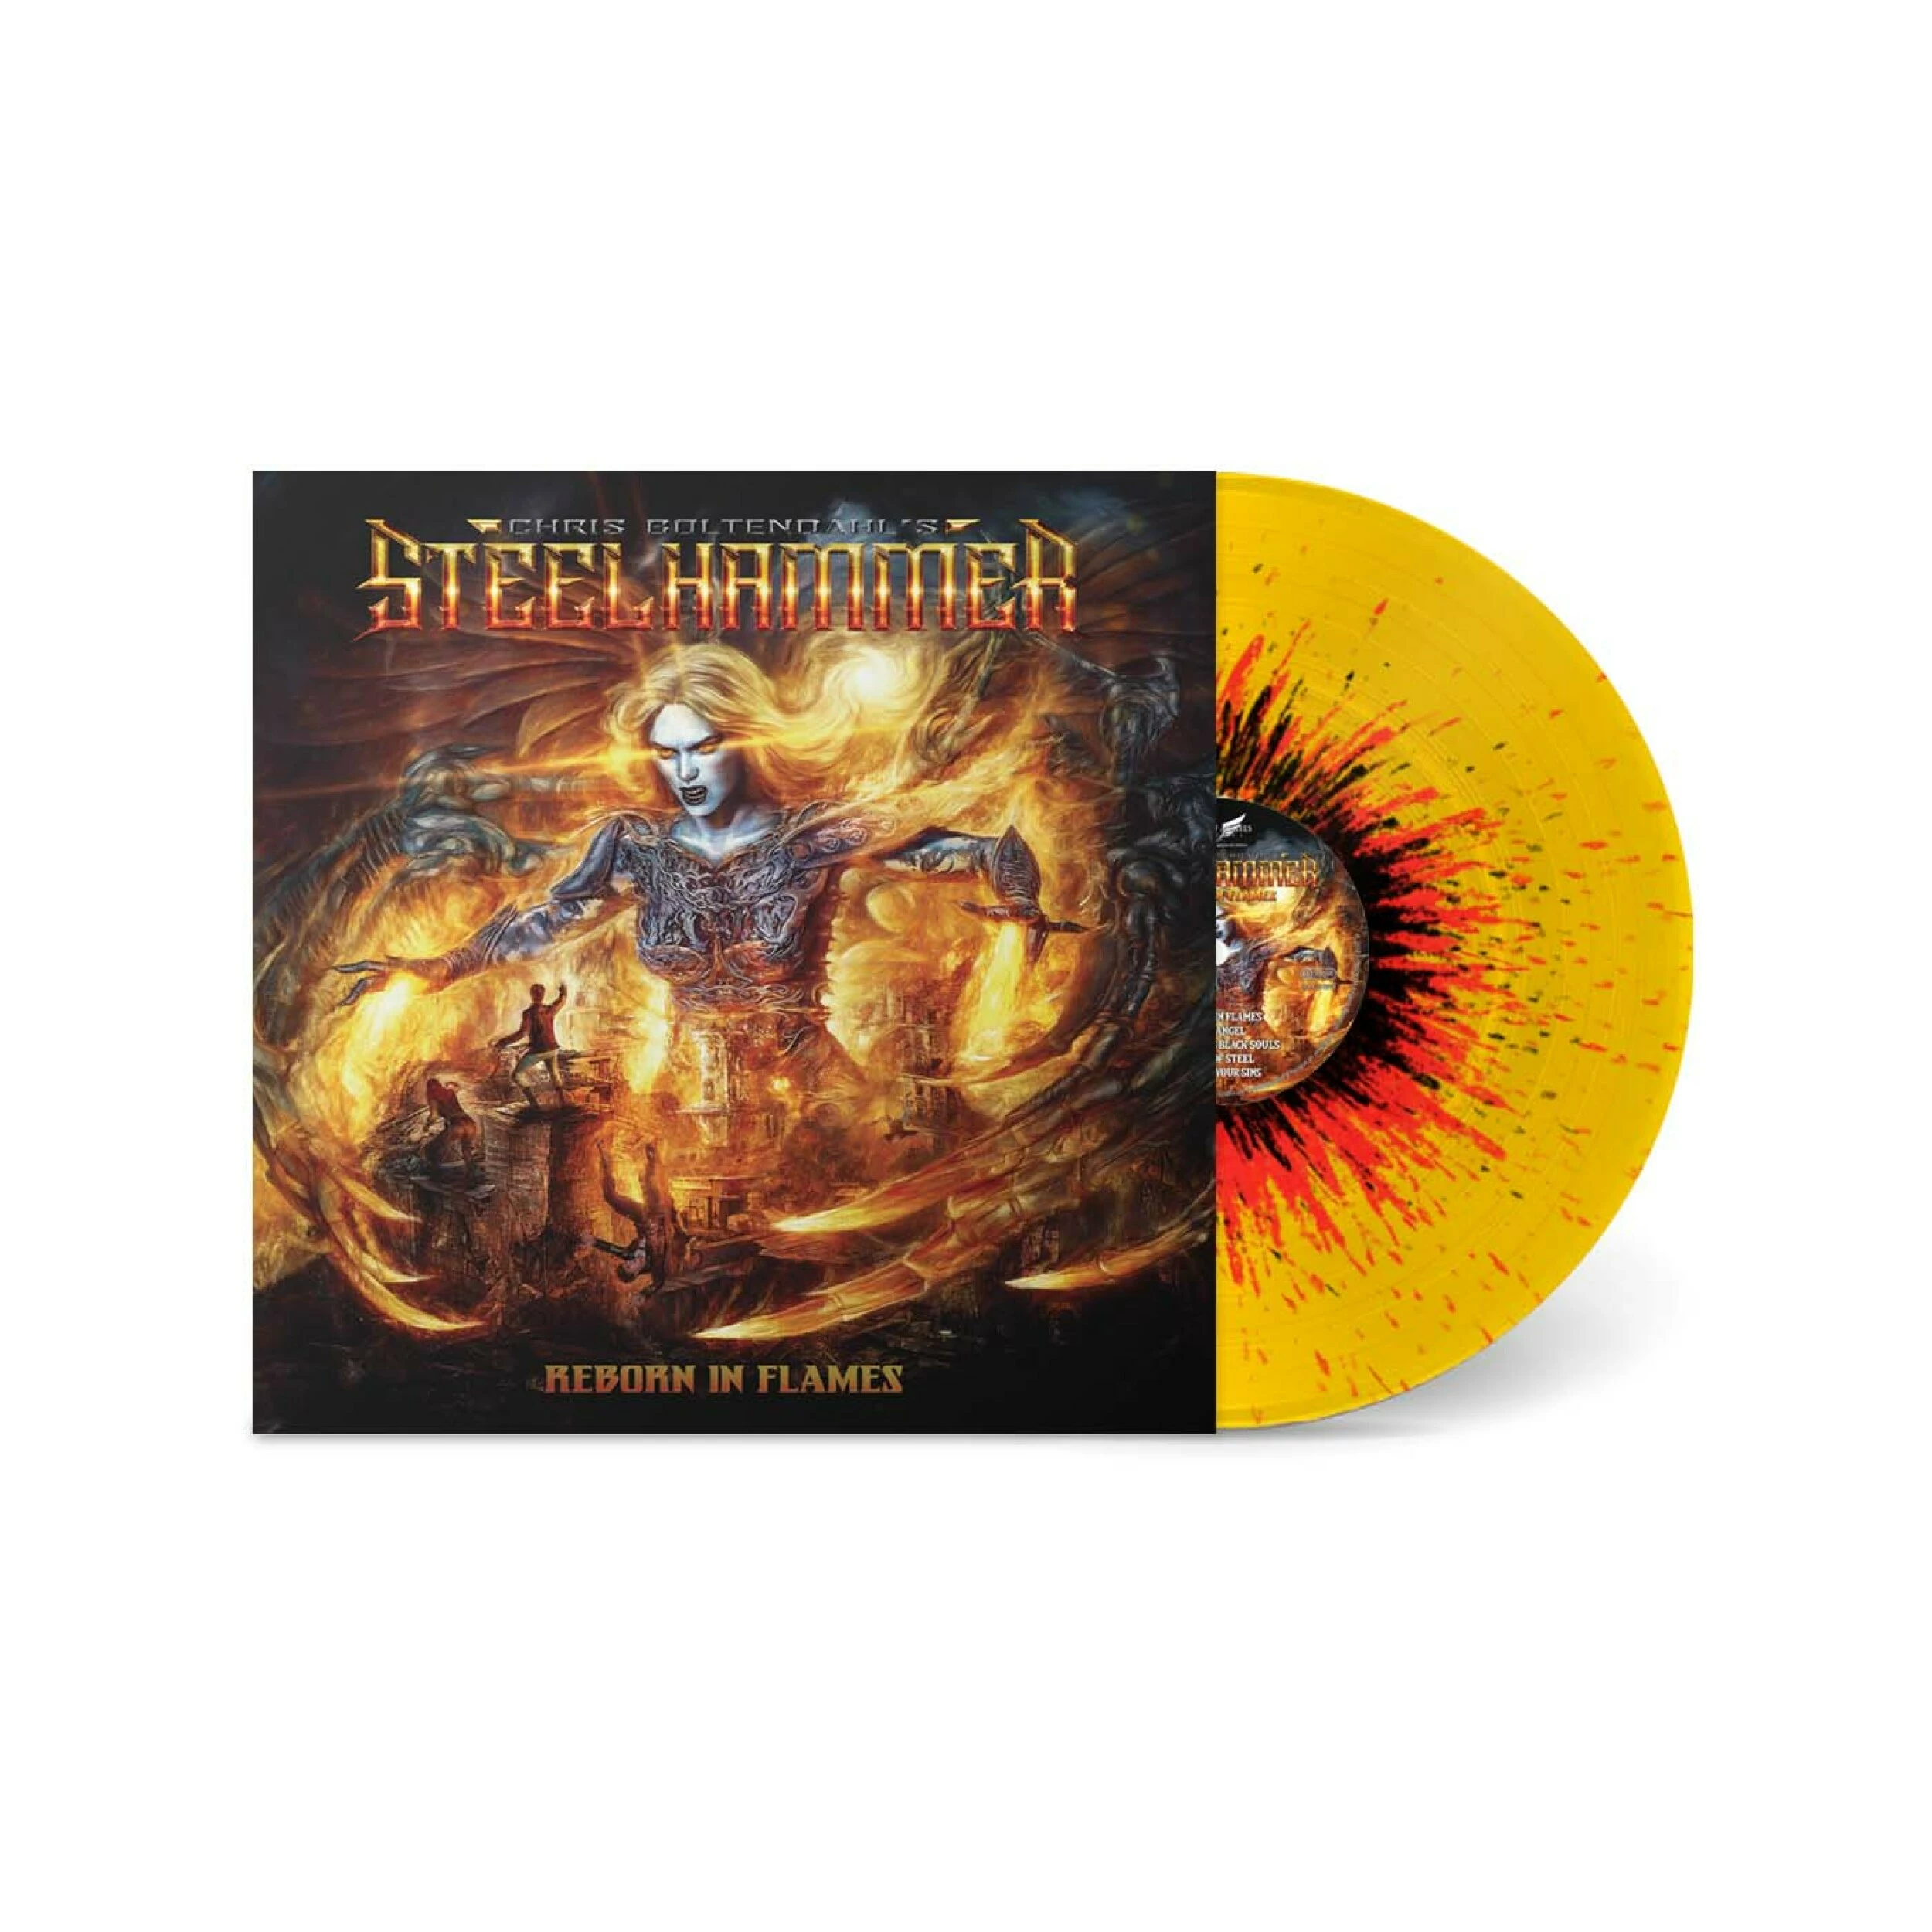 CHRIS BOHLTENDAHL'S STEELHAMMER - Reborn In Flame [YELLOW/ORANGE/BLACK SPLATTER LP]